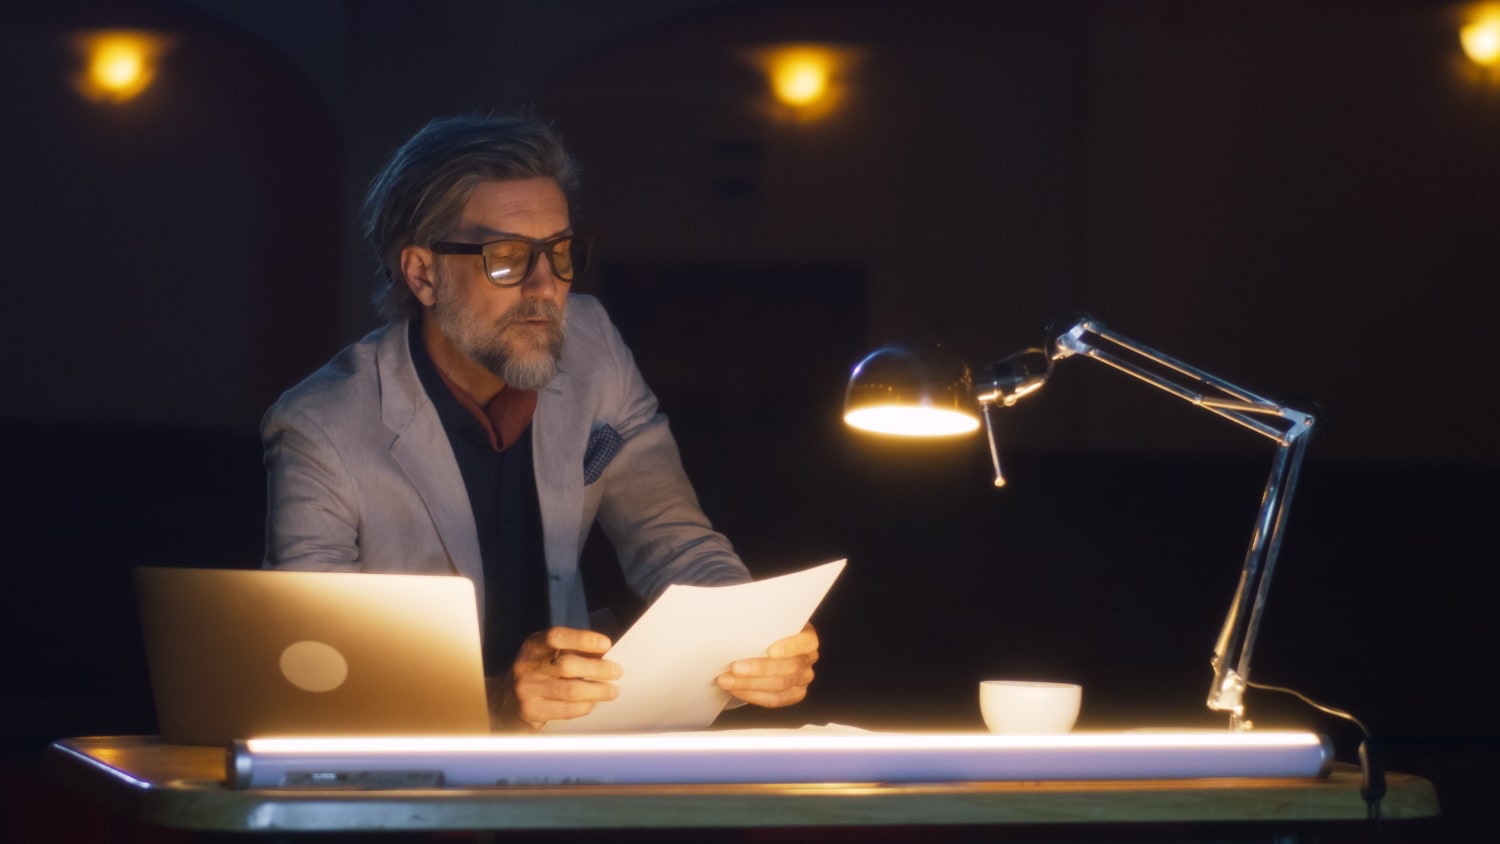 Lesender Mann mit Brille sitzt im Dunkeln bei Schreibtischbeleuchtung.